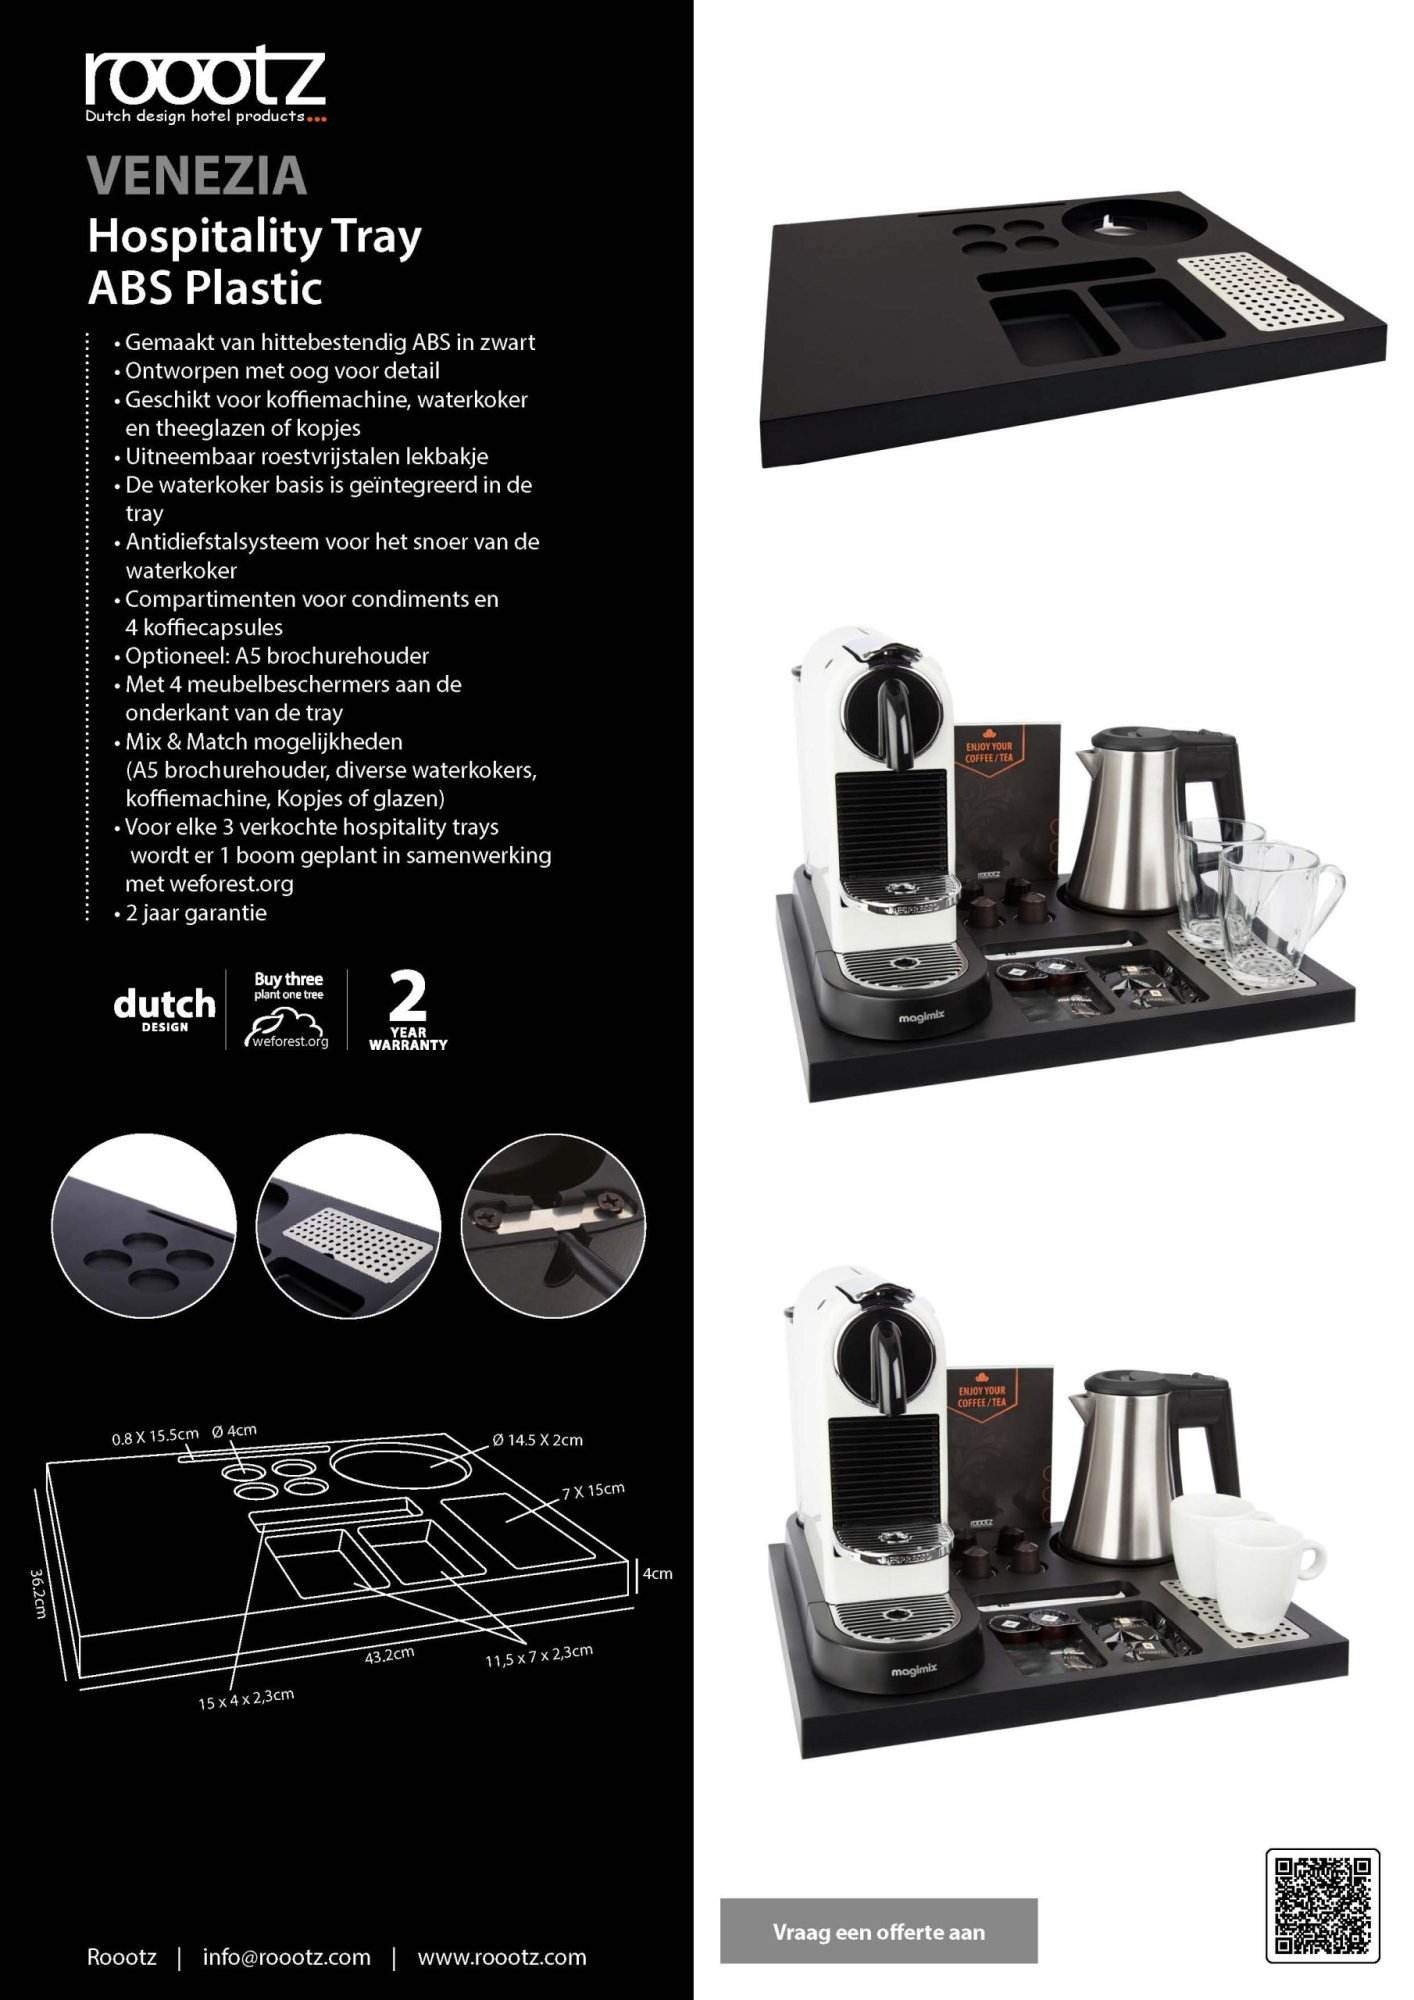 Hospitality tray zwart plastic met ruimte voor een nespresso machine, waterkoker, kopjes en glazen